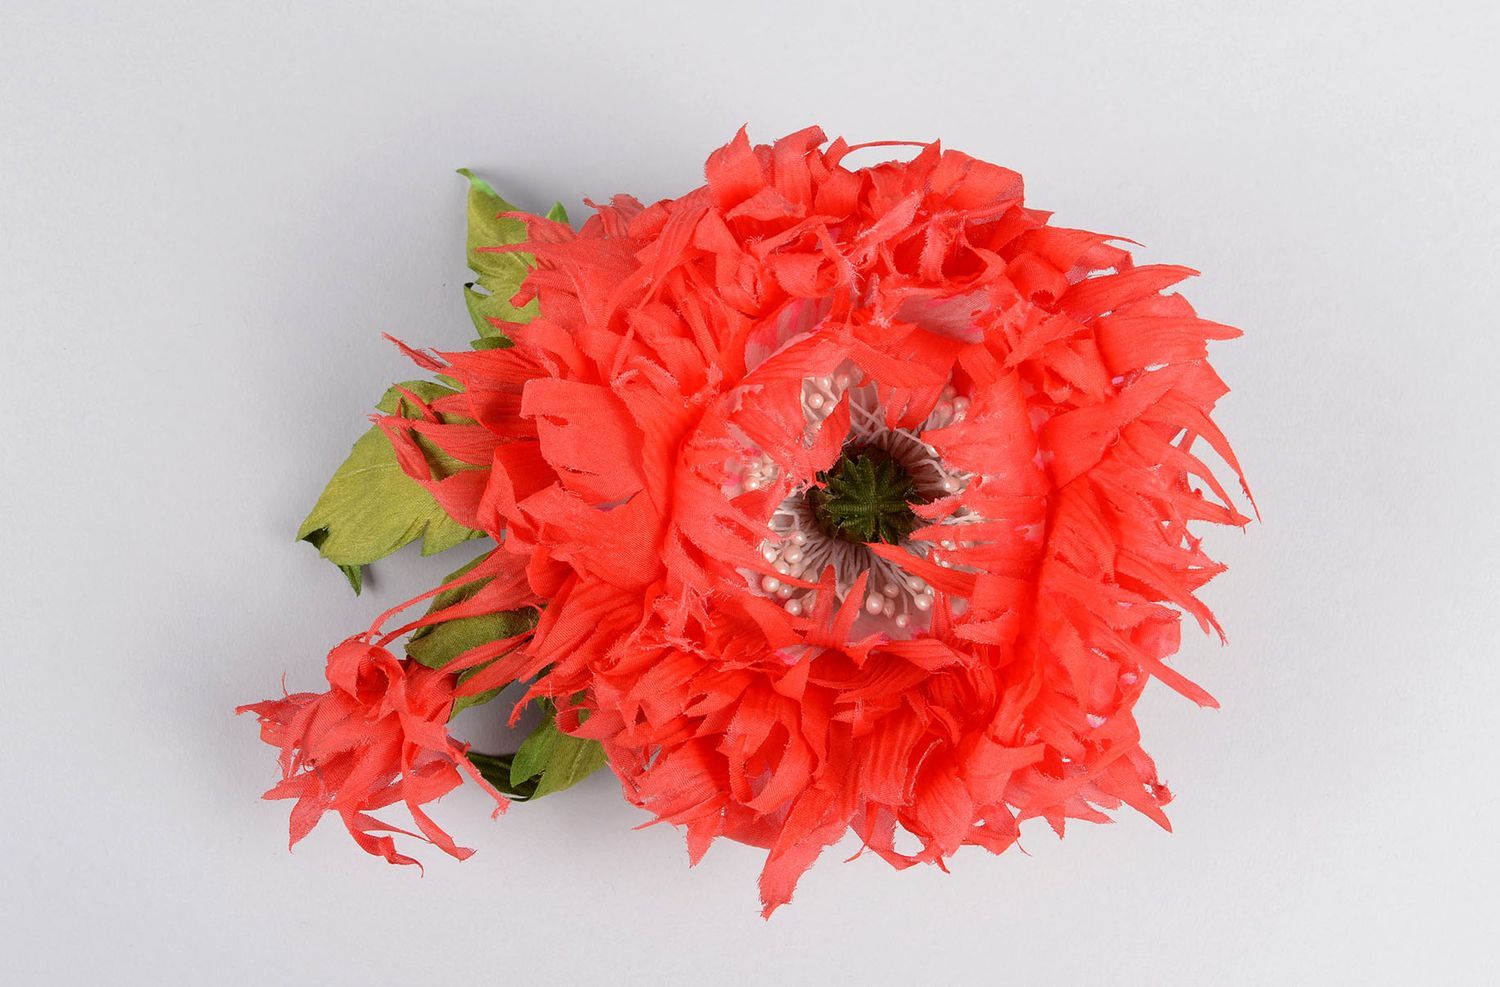 Брошь ручной работы красная брошь-цветок авторское дизайнерское украшение фото 2